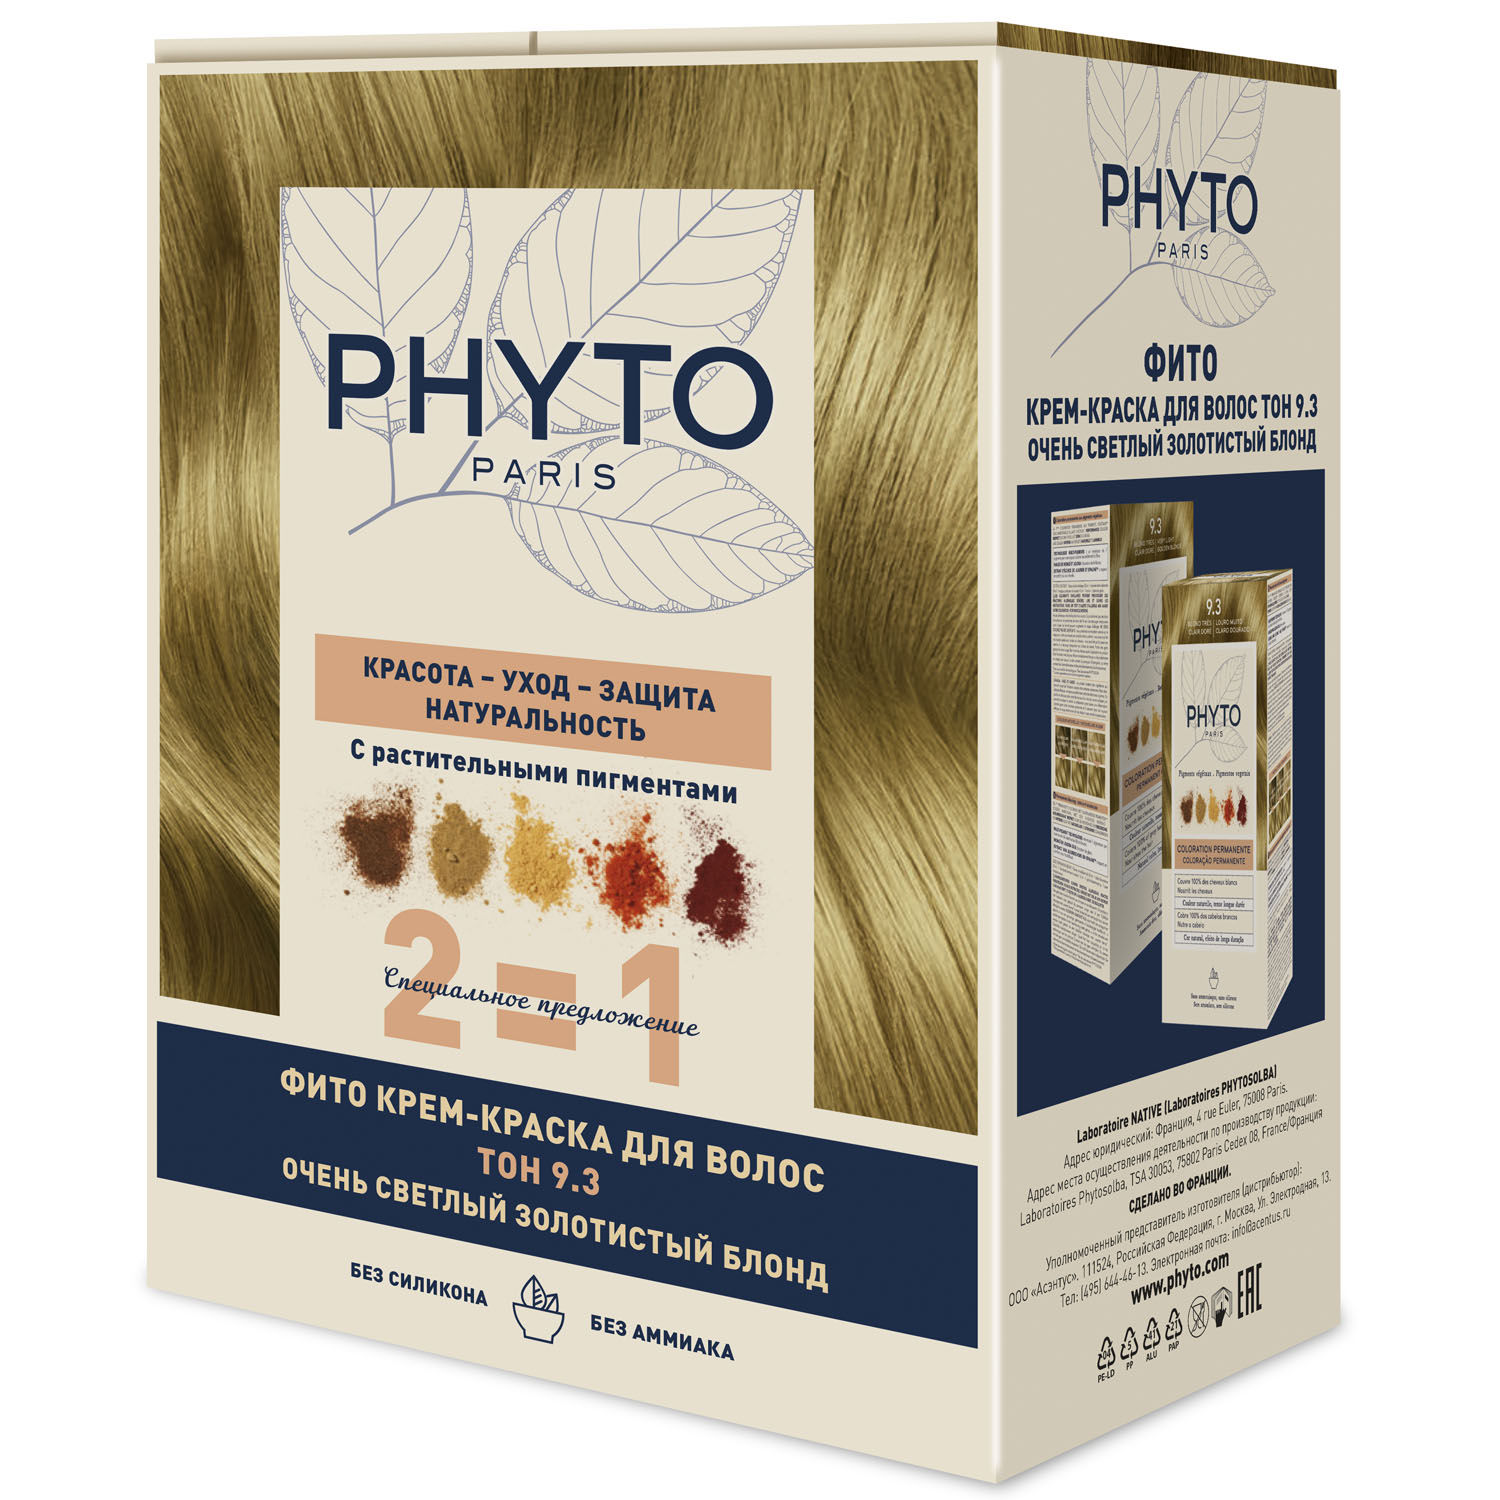 Phyto Крем-краска для волос тон 9.3 очень светлый золотистый блонд, 2 шт (Phyto, Phytocolor)